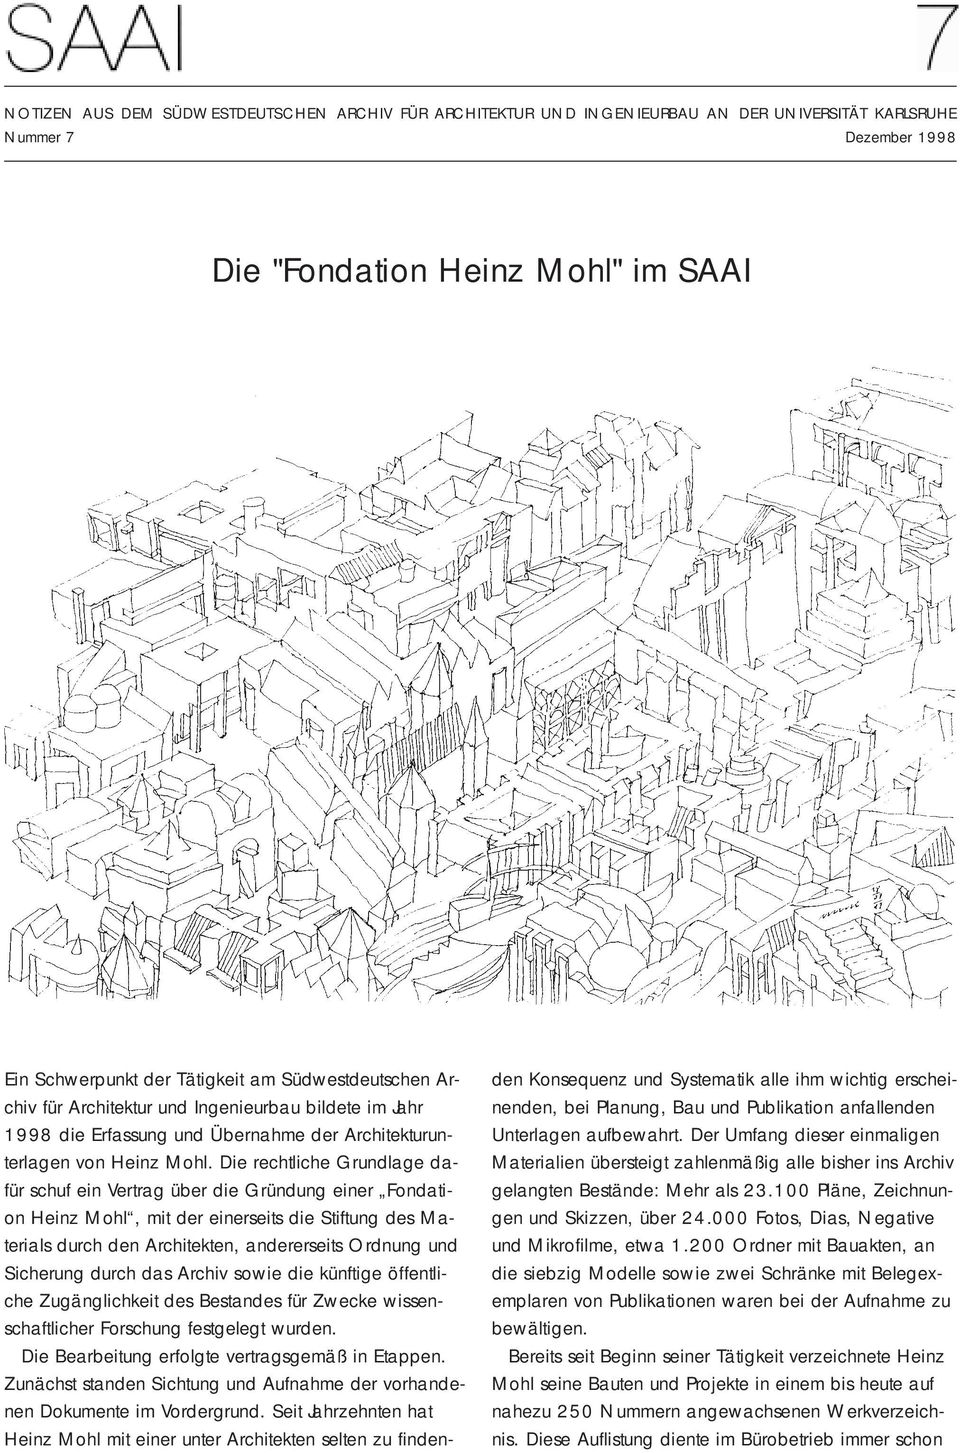 Die rechtliche Grundlage dafür schuf ein Vertrag über die Gründung einer Fondation Heinz Mohl, mit der einerseits die Stiftung des Materials durch den Architekten, andererseits Ordnung und Sicherung